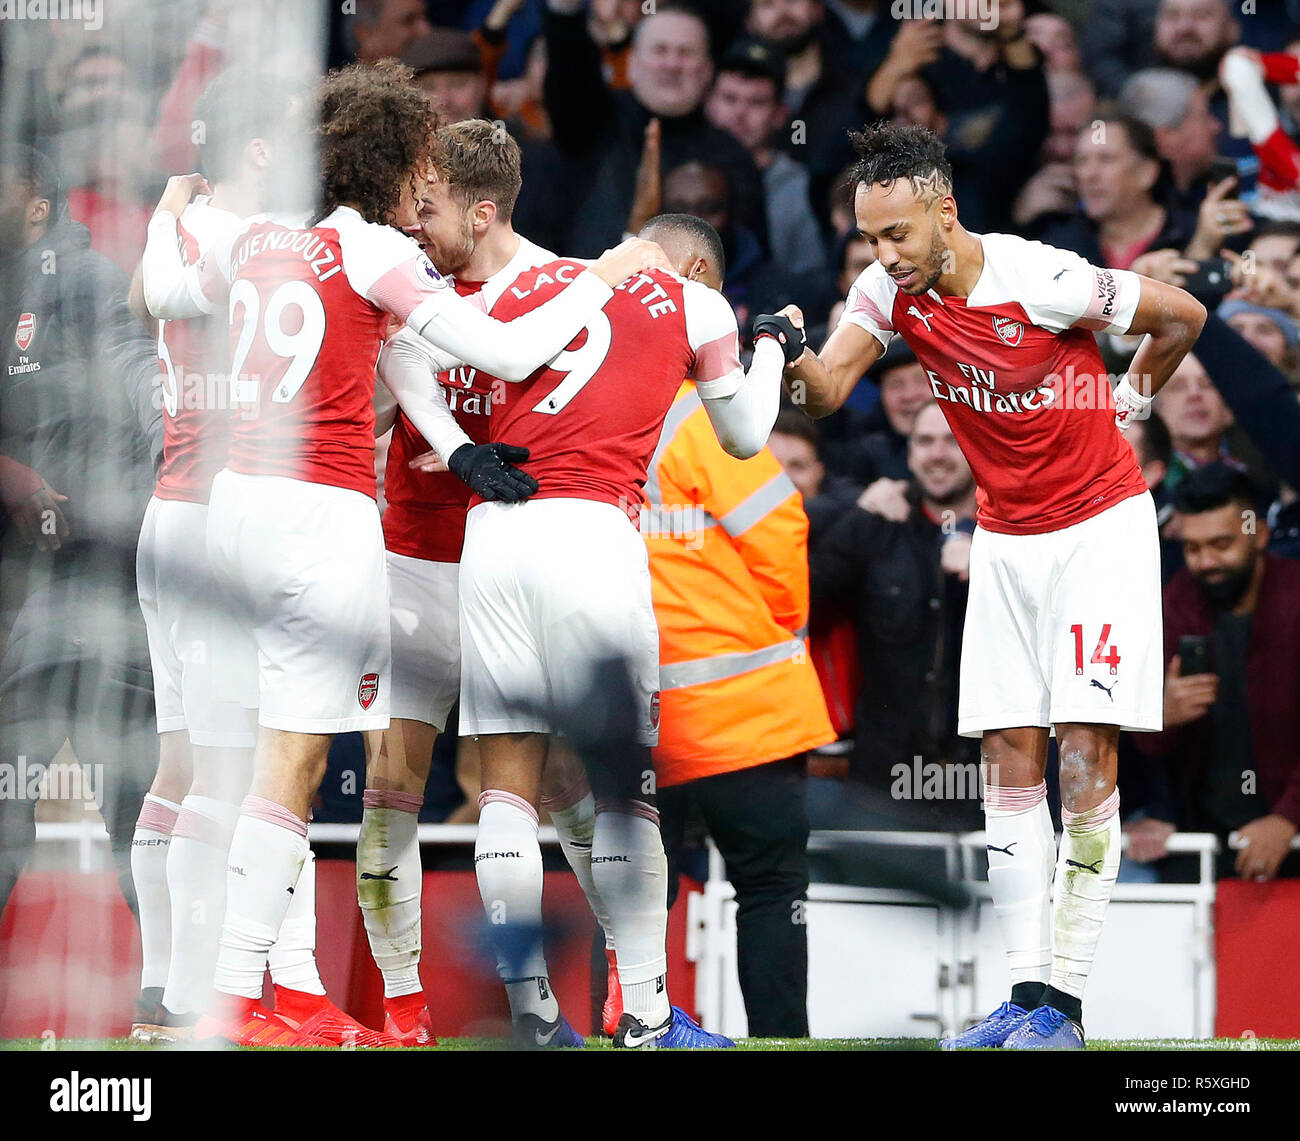 Londres, Reino Unido. 2 de diciembre, 2018. Goleadores del Arsenal (L) Lacazette y Pierre-Emerick Aubameyang (R) se estrechan las manos en la celebración durante la English Premier League entre Arsenal